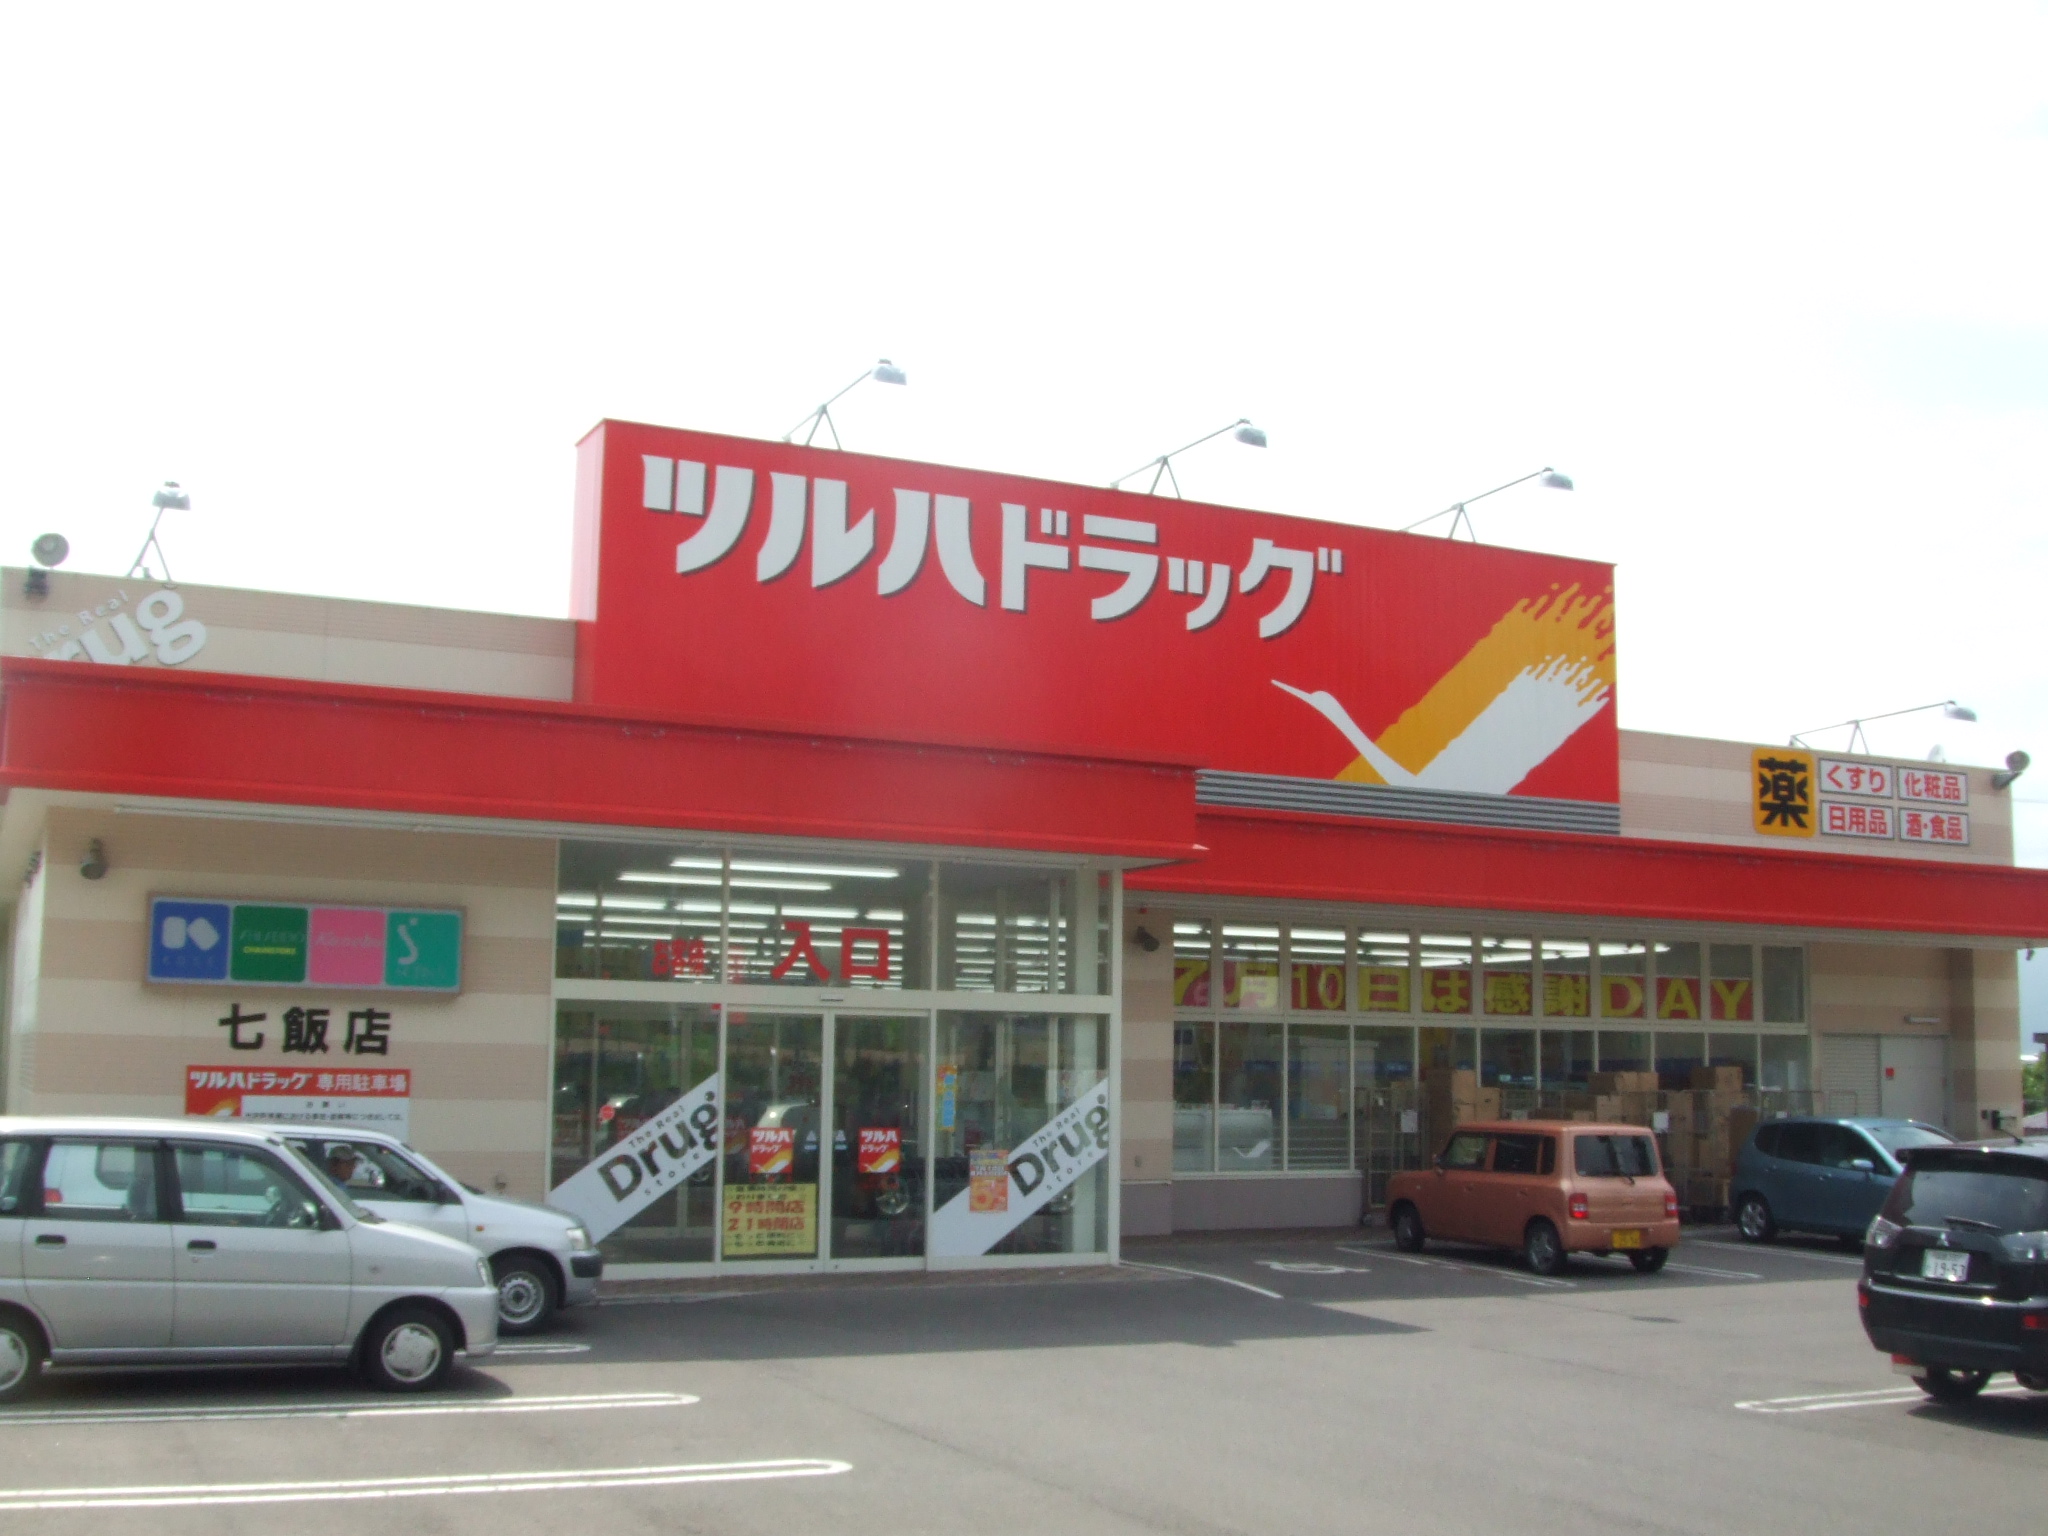 Dorakkusutoa. Tsuruha drag Nanae shop 1017m until (drugstore)